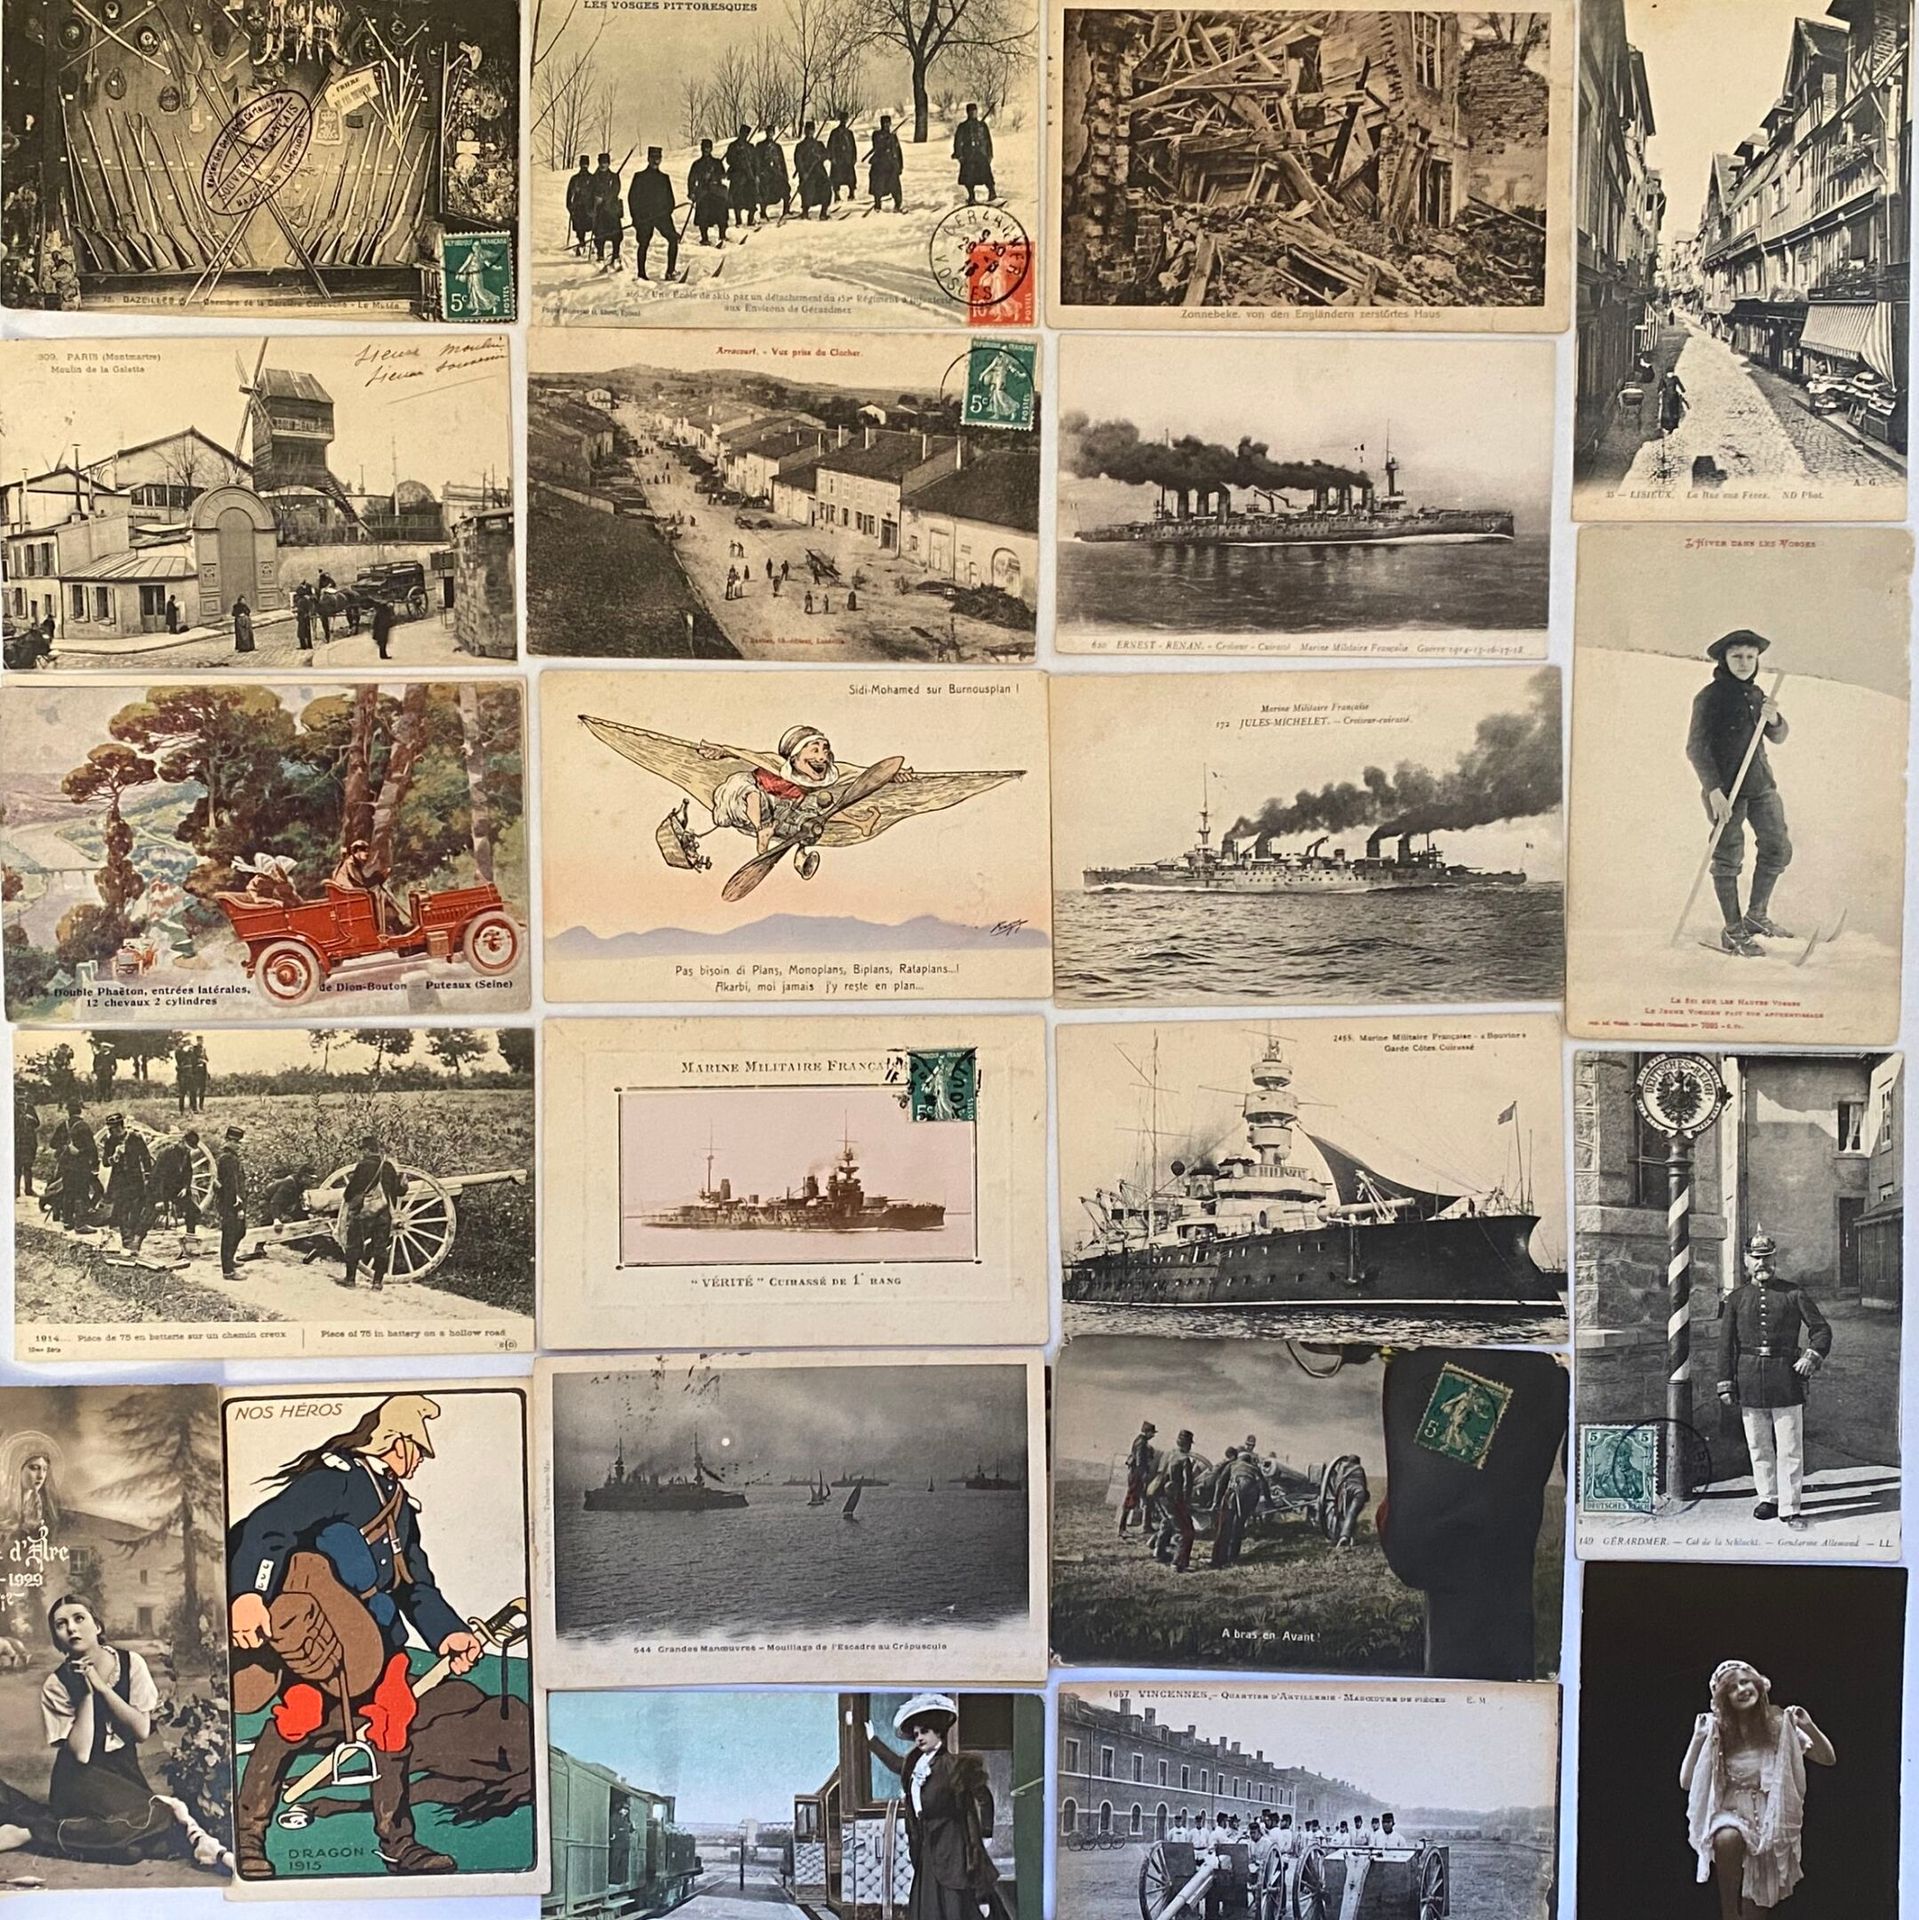 Null 明信片 
一套约 30 种不同明信片：军事、战争、热拉尔德梅尔、文森、妇女、巴泽耶、孚日山脉、利雪、巴黎、法国海军、阿拉库尔、尼斯等。

专家：Isa&hellip;